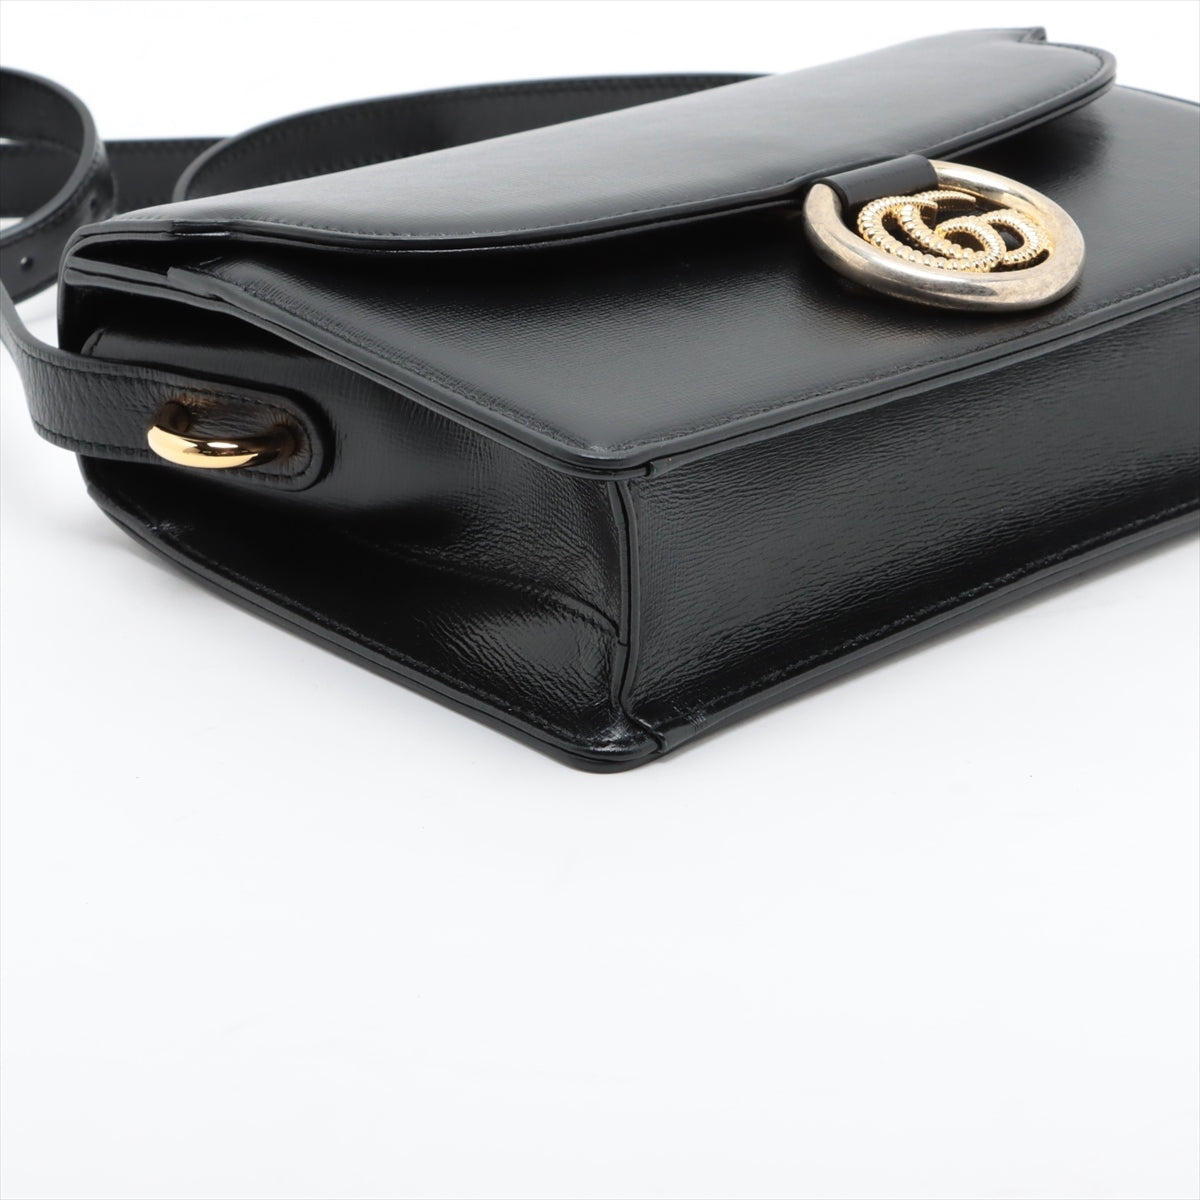 Gucci GG Marmont Leather Shoulder bag Black 589474